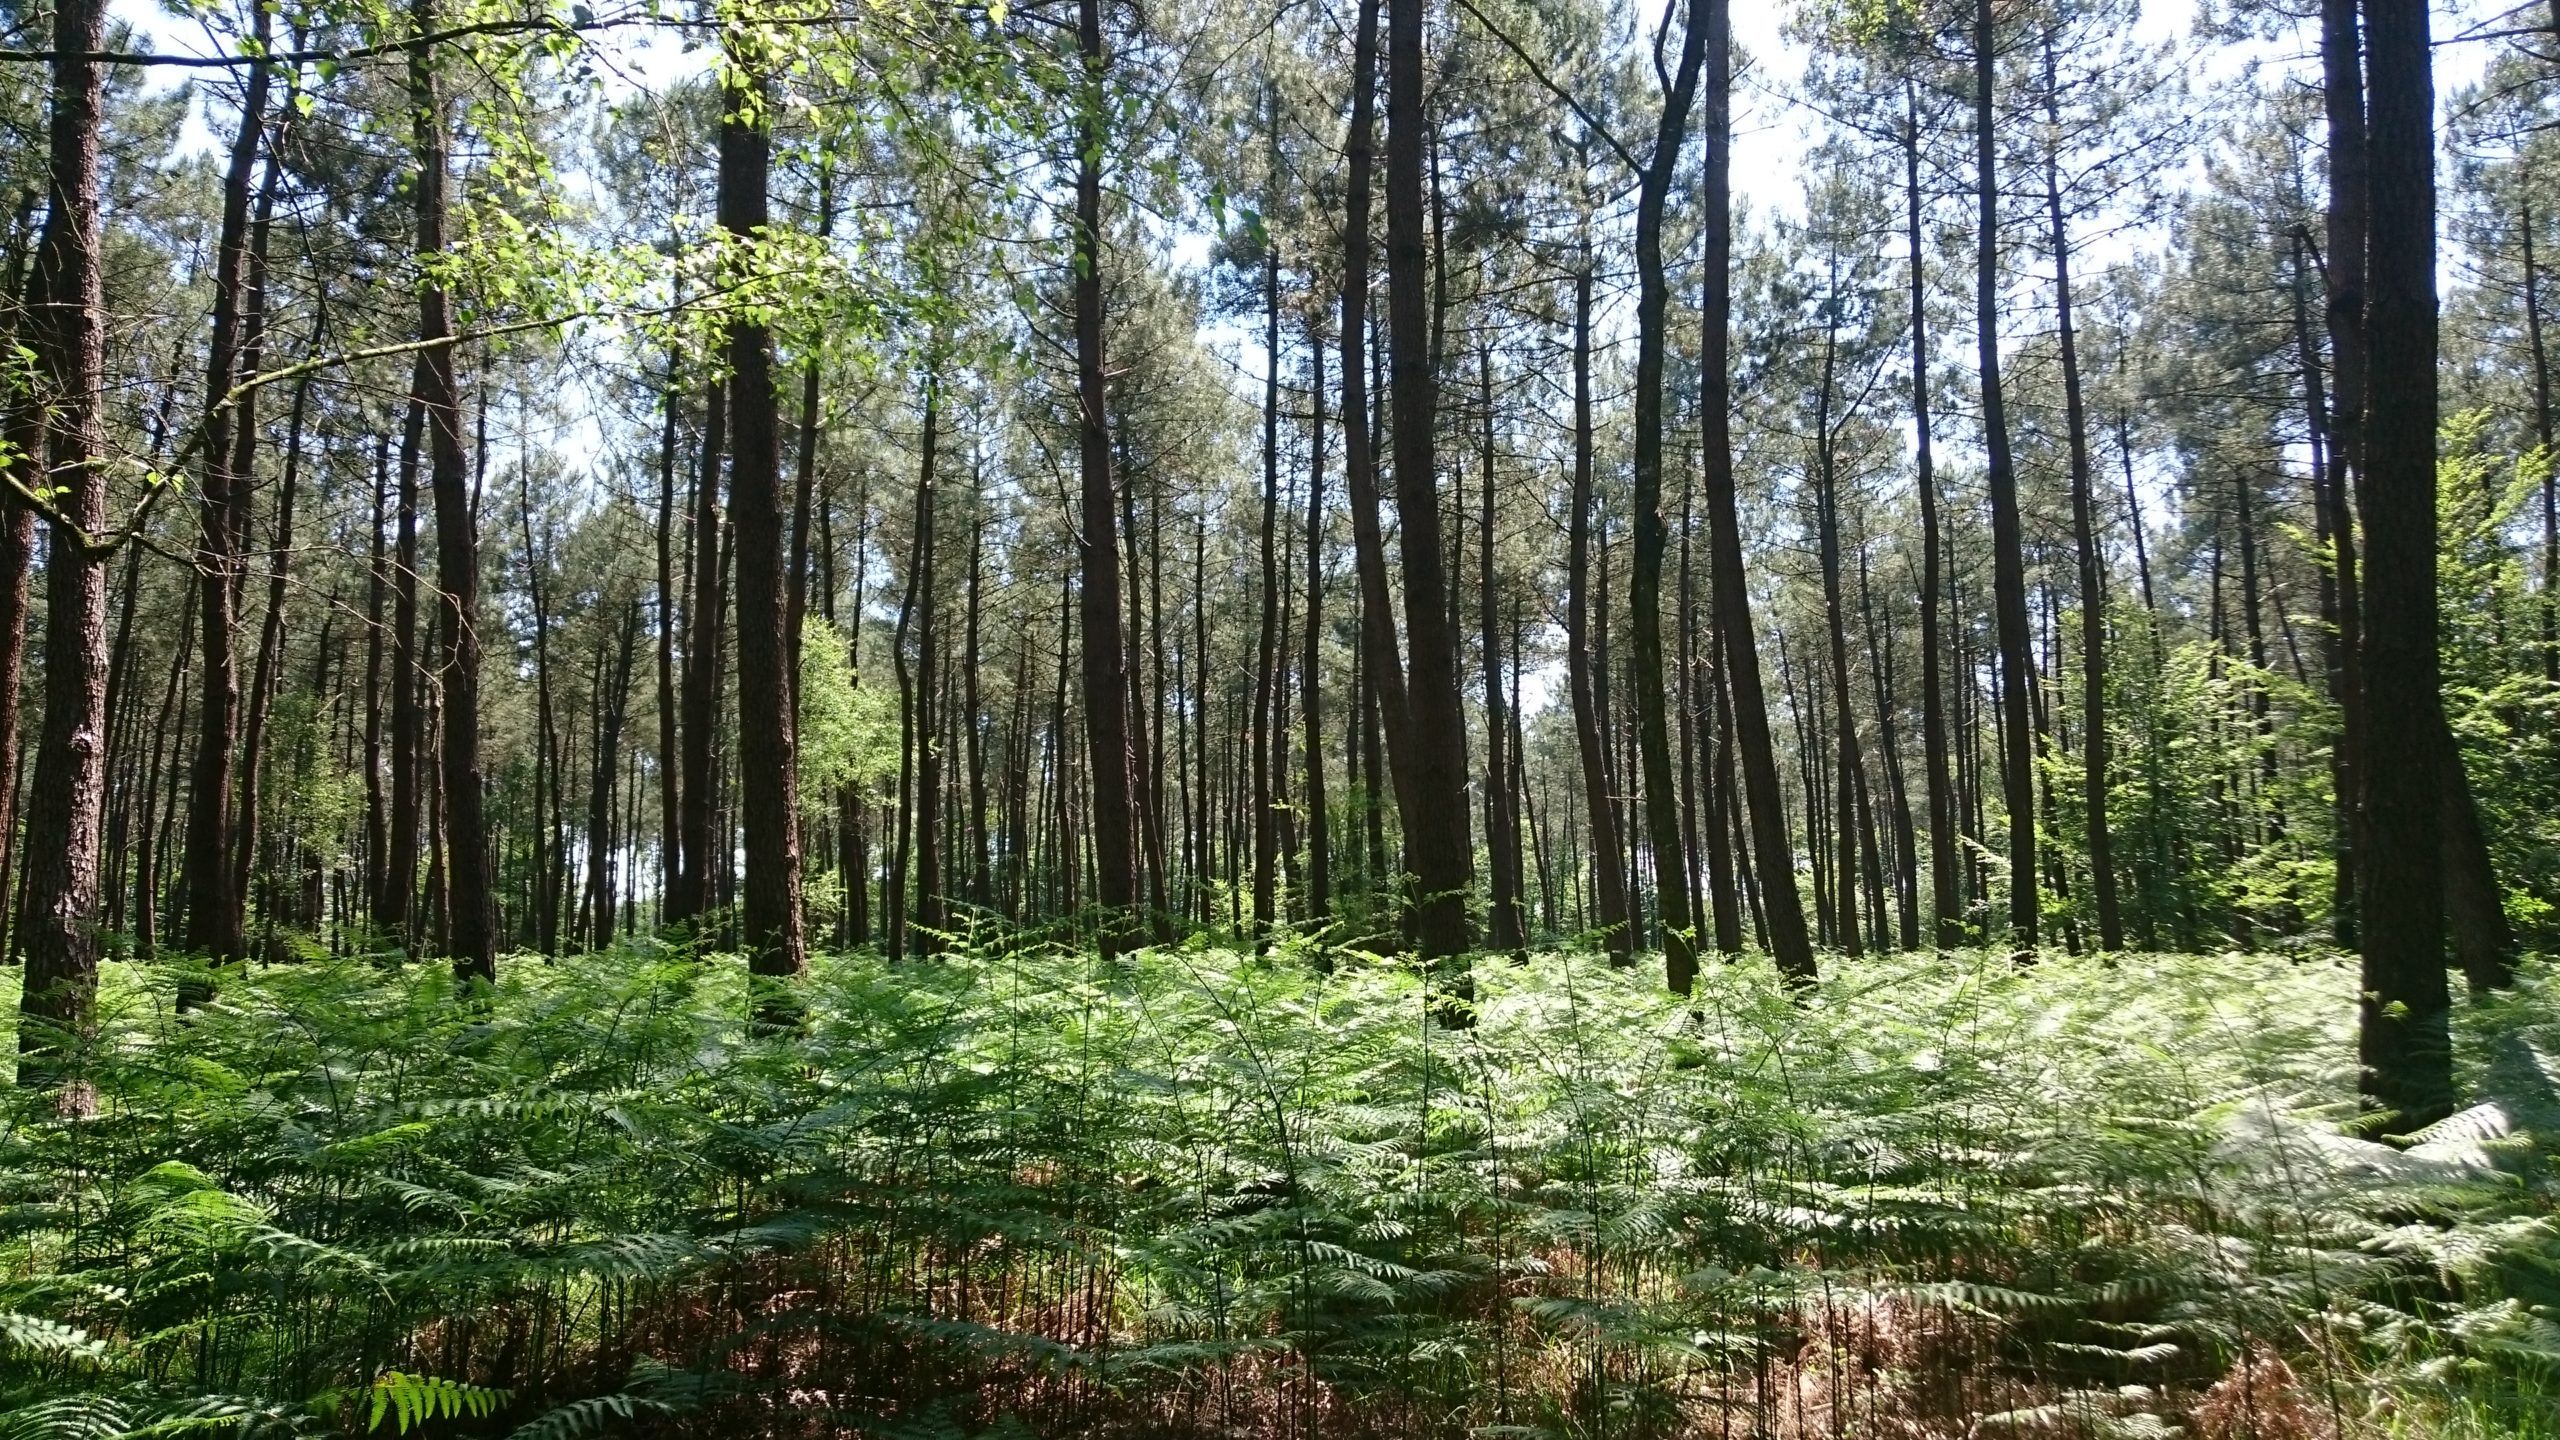 Lancement des Assises de la forêt et du bois